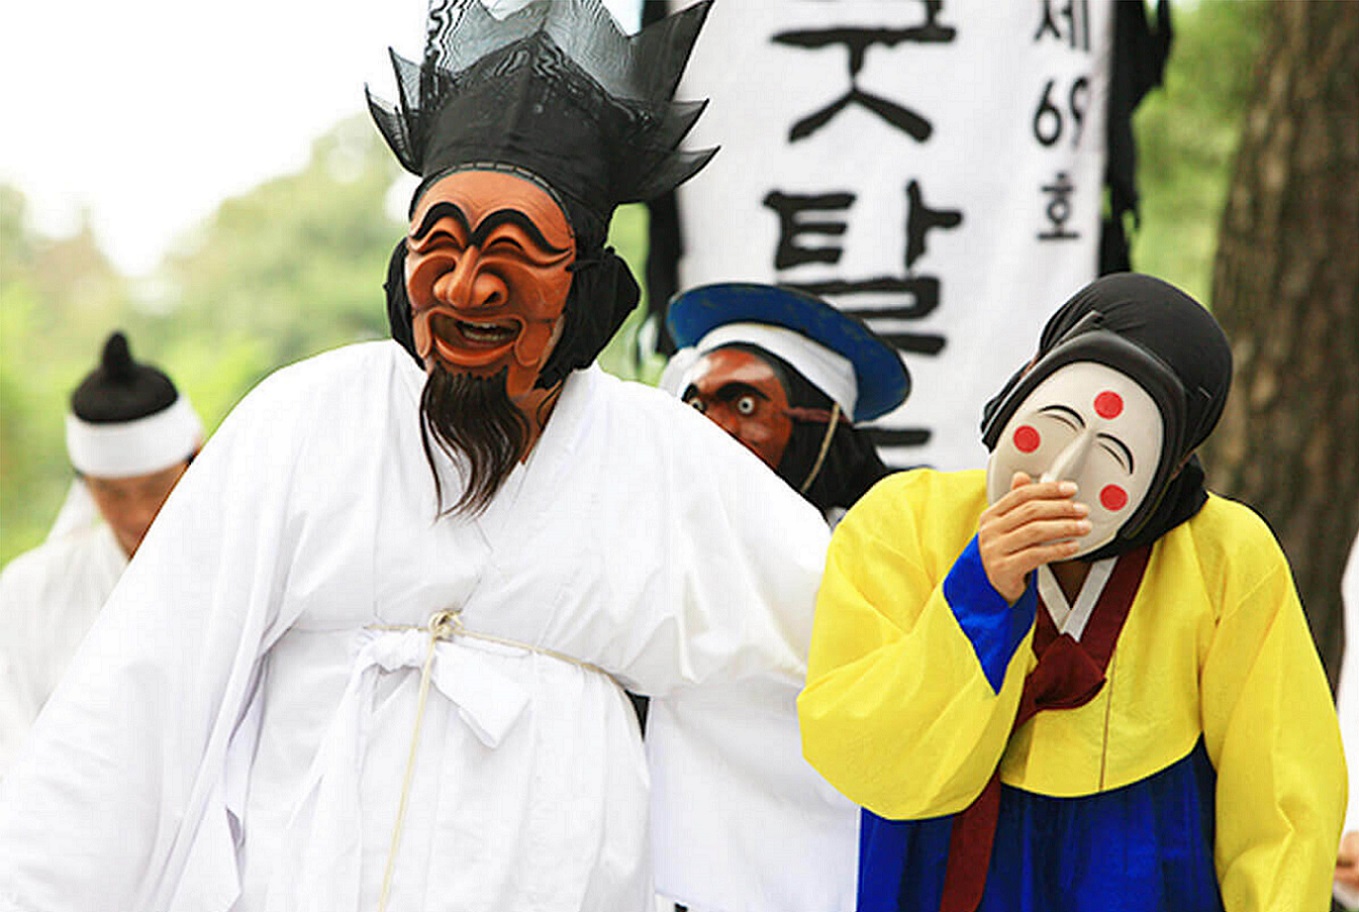 Múa mặt nạ truyền thống ở Hàn Quốc | TGROUP Du lịch Thông minh SMARTOURISM